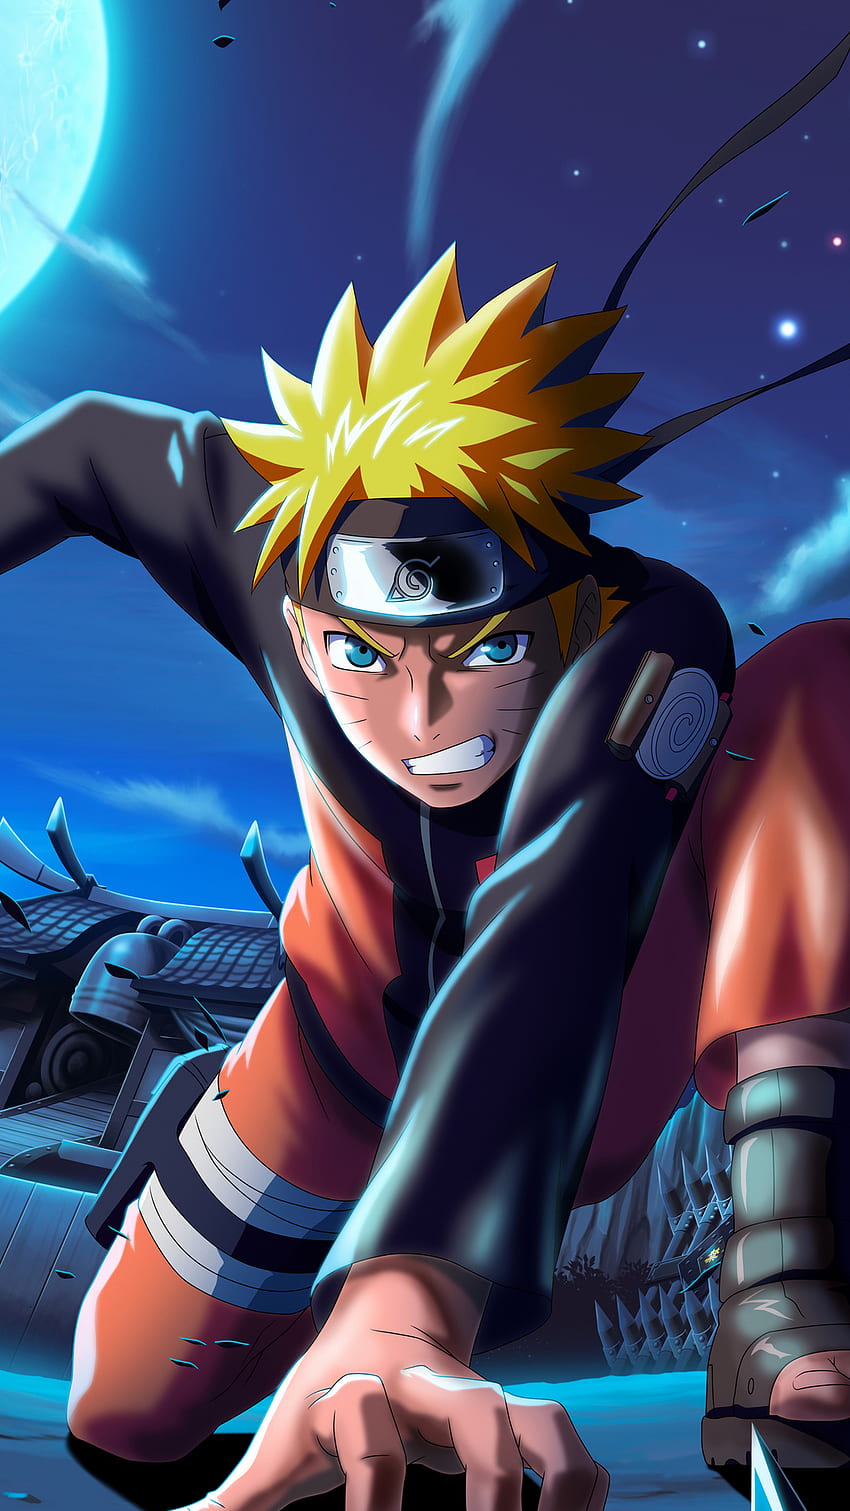 Naruto: Một trong những bộ anime/manga Hot nhất thập kỷ qua! Naruto kể về cuộc phiêu lưu của cậu bé Naruto Uzumaki trong hành trình trưởng thành và trở thành một Hokage vĩ đại. Hãy xem hình ảnh liên quan đến Naruto để đắm chìm trong thế giới ninja đầy màu sắc này!